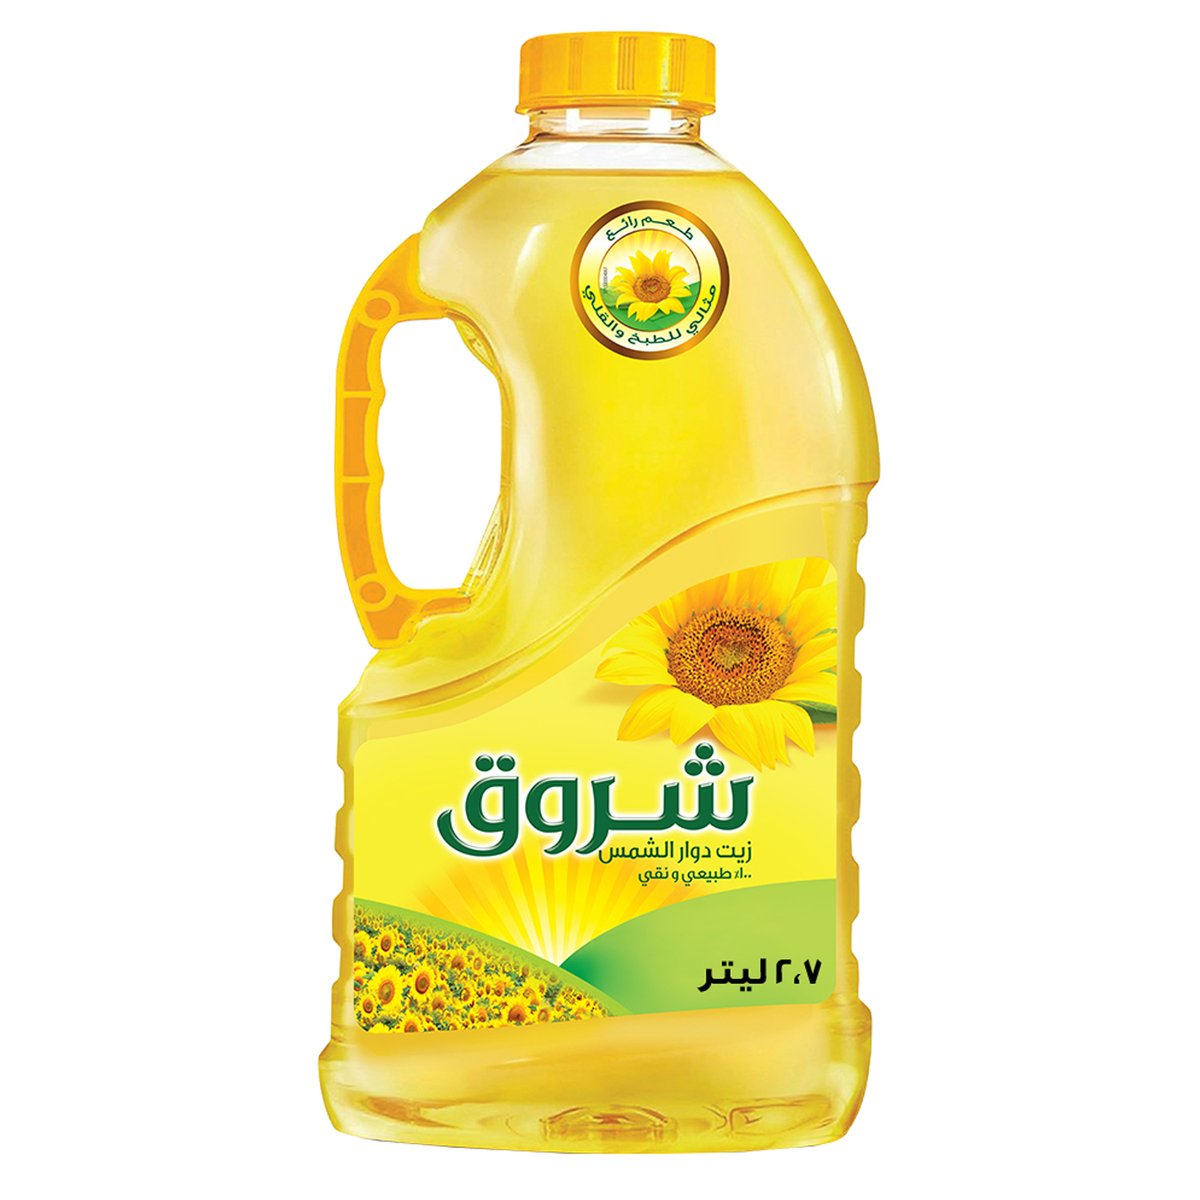 Buy Shurooq Sunflower Oil 2.7Litre Online at Best Price | Sunflower Oil | Lulu KSA in Saudi Arabia